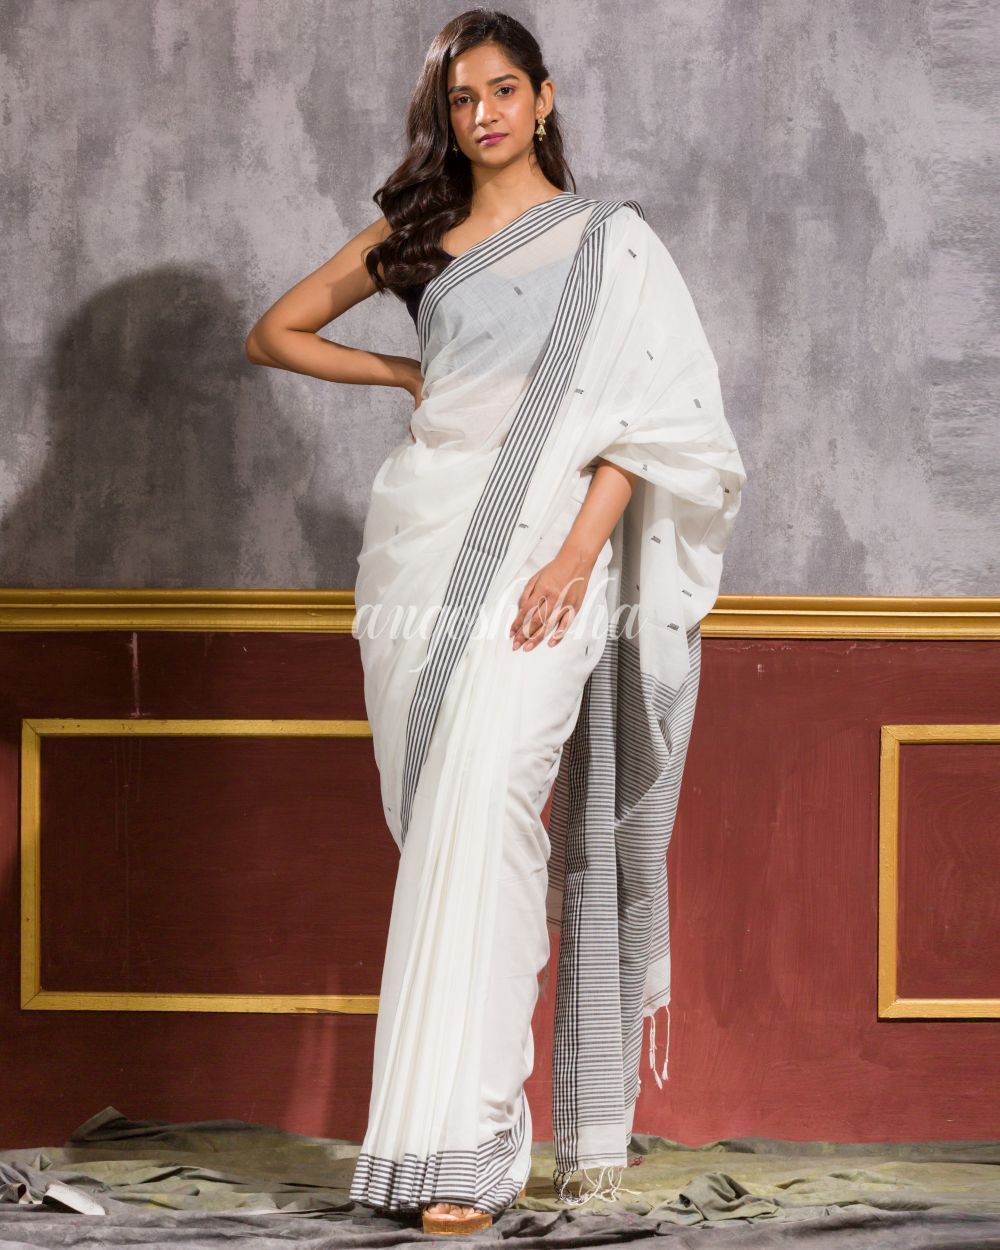 Women's White Handwoven Cotton Saree - Angoshobha